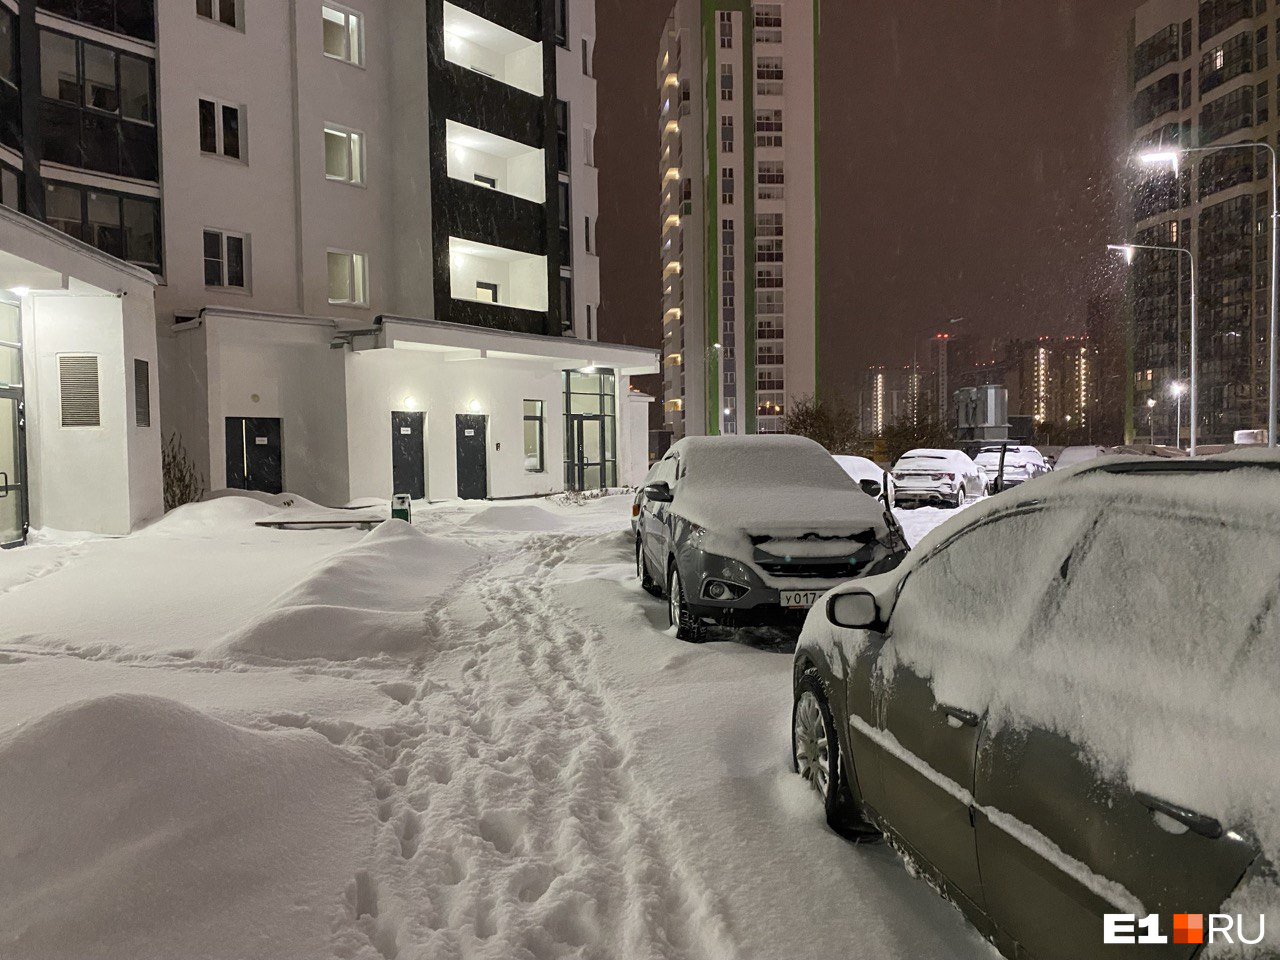 Ни проехать ни пройти. Из-за мощного снегопада в Екатеринбурге случился адский коллапс на дорогах